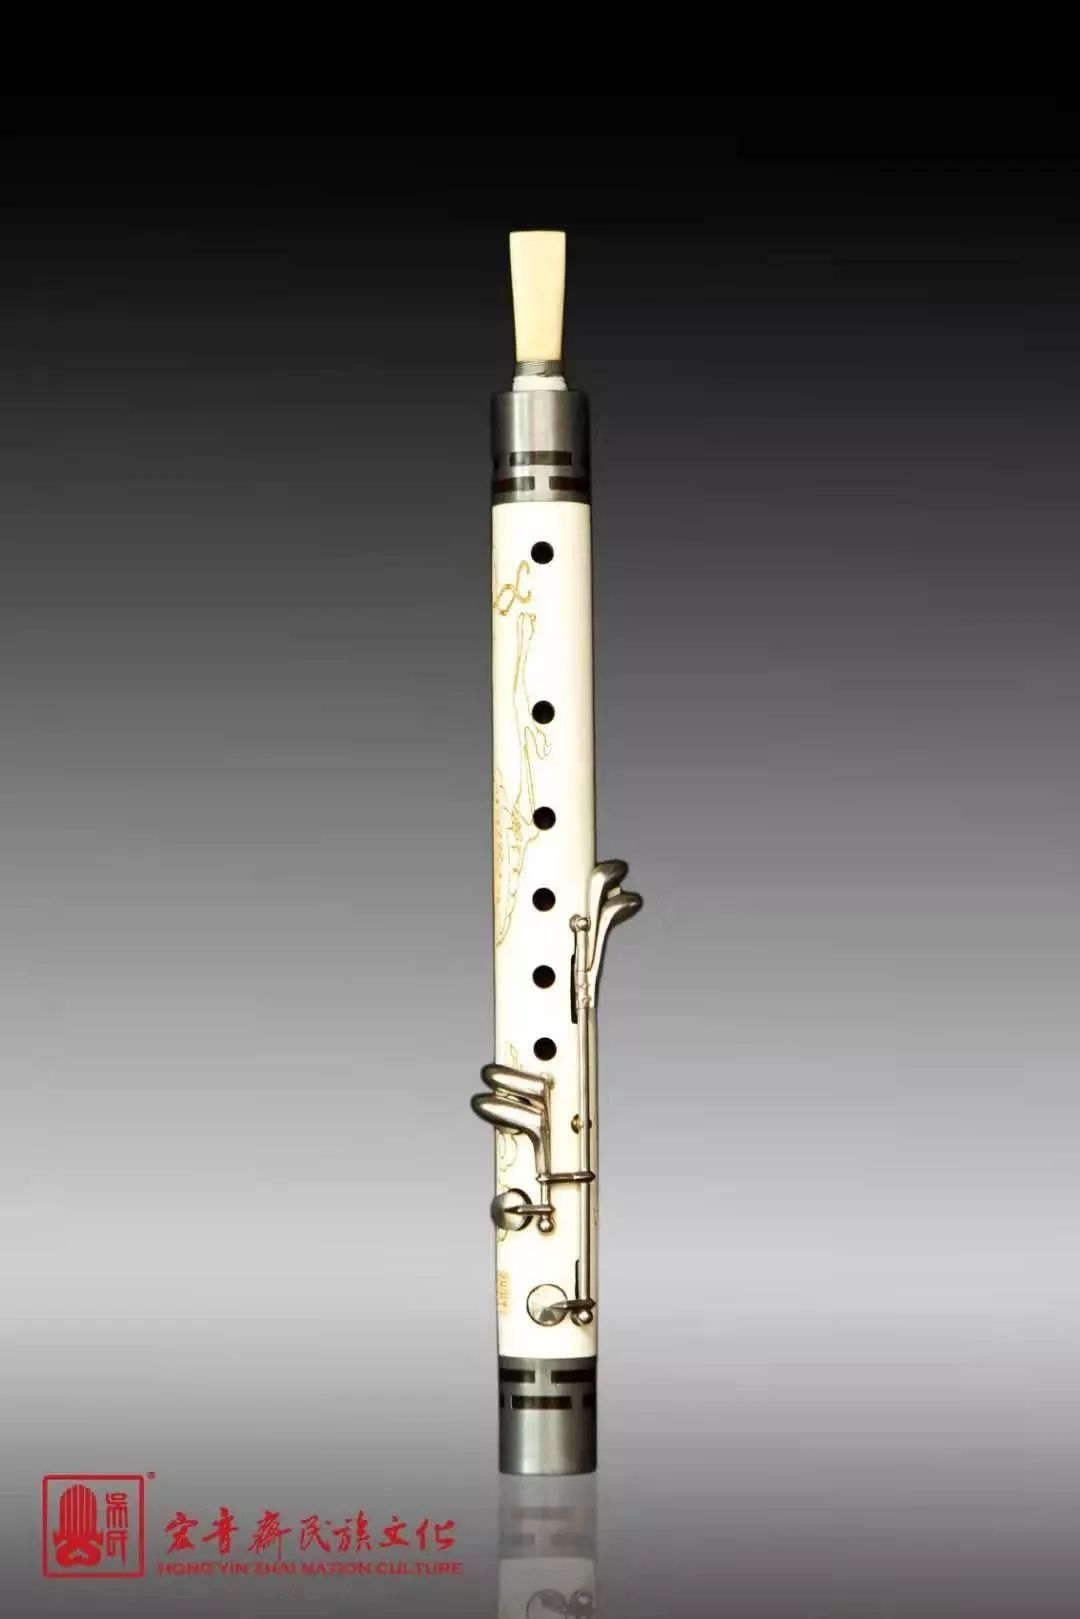 管乐创始于清代后期,是中国唯一从清宫内廷中传承延续的乐器制作技艺